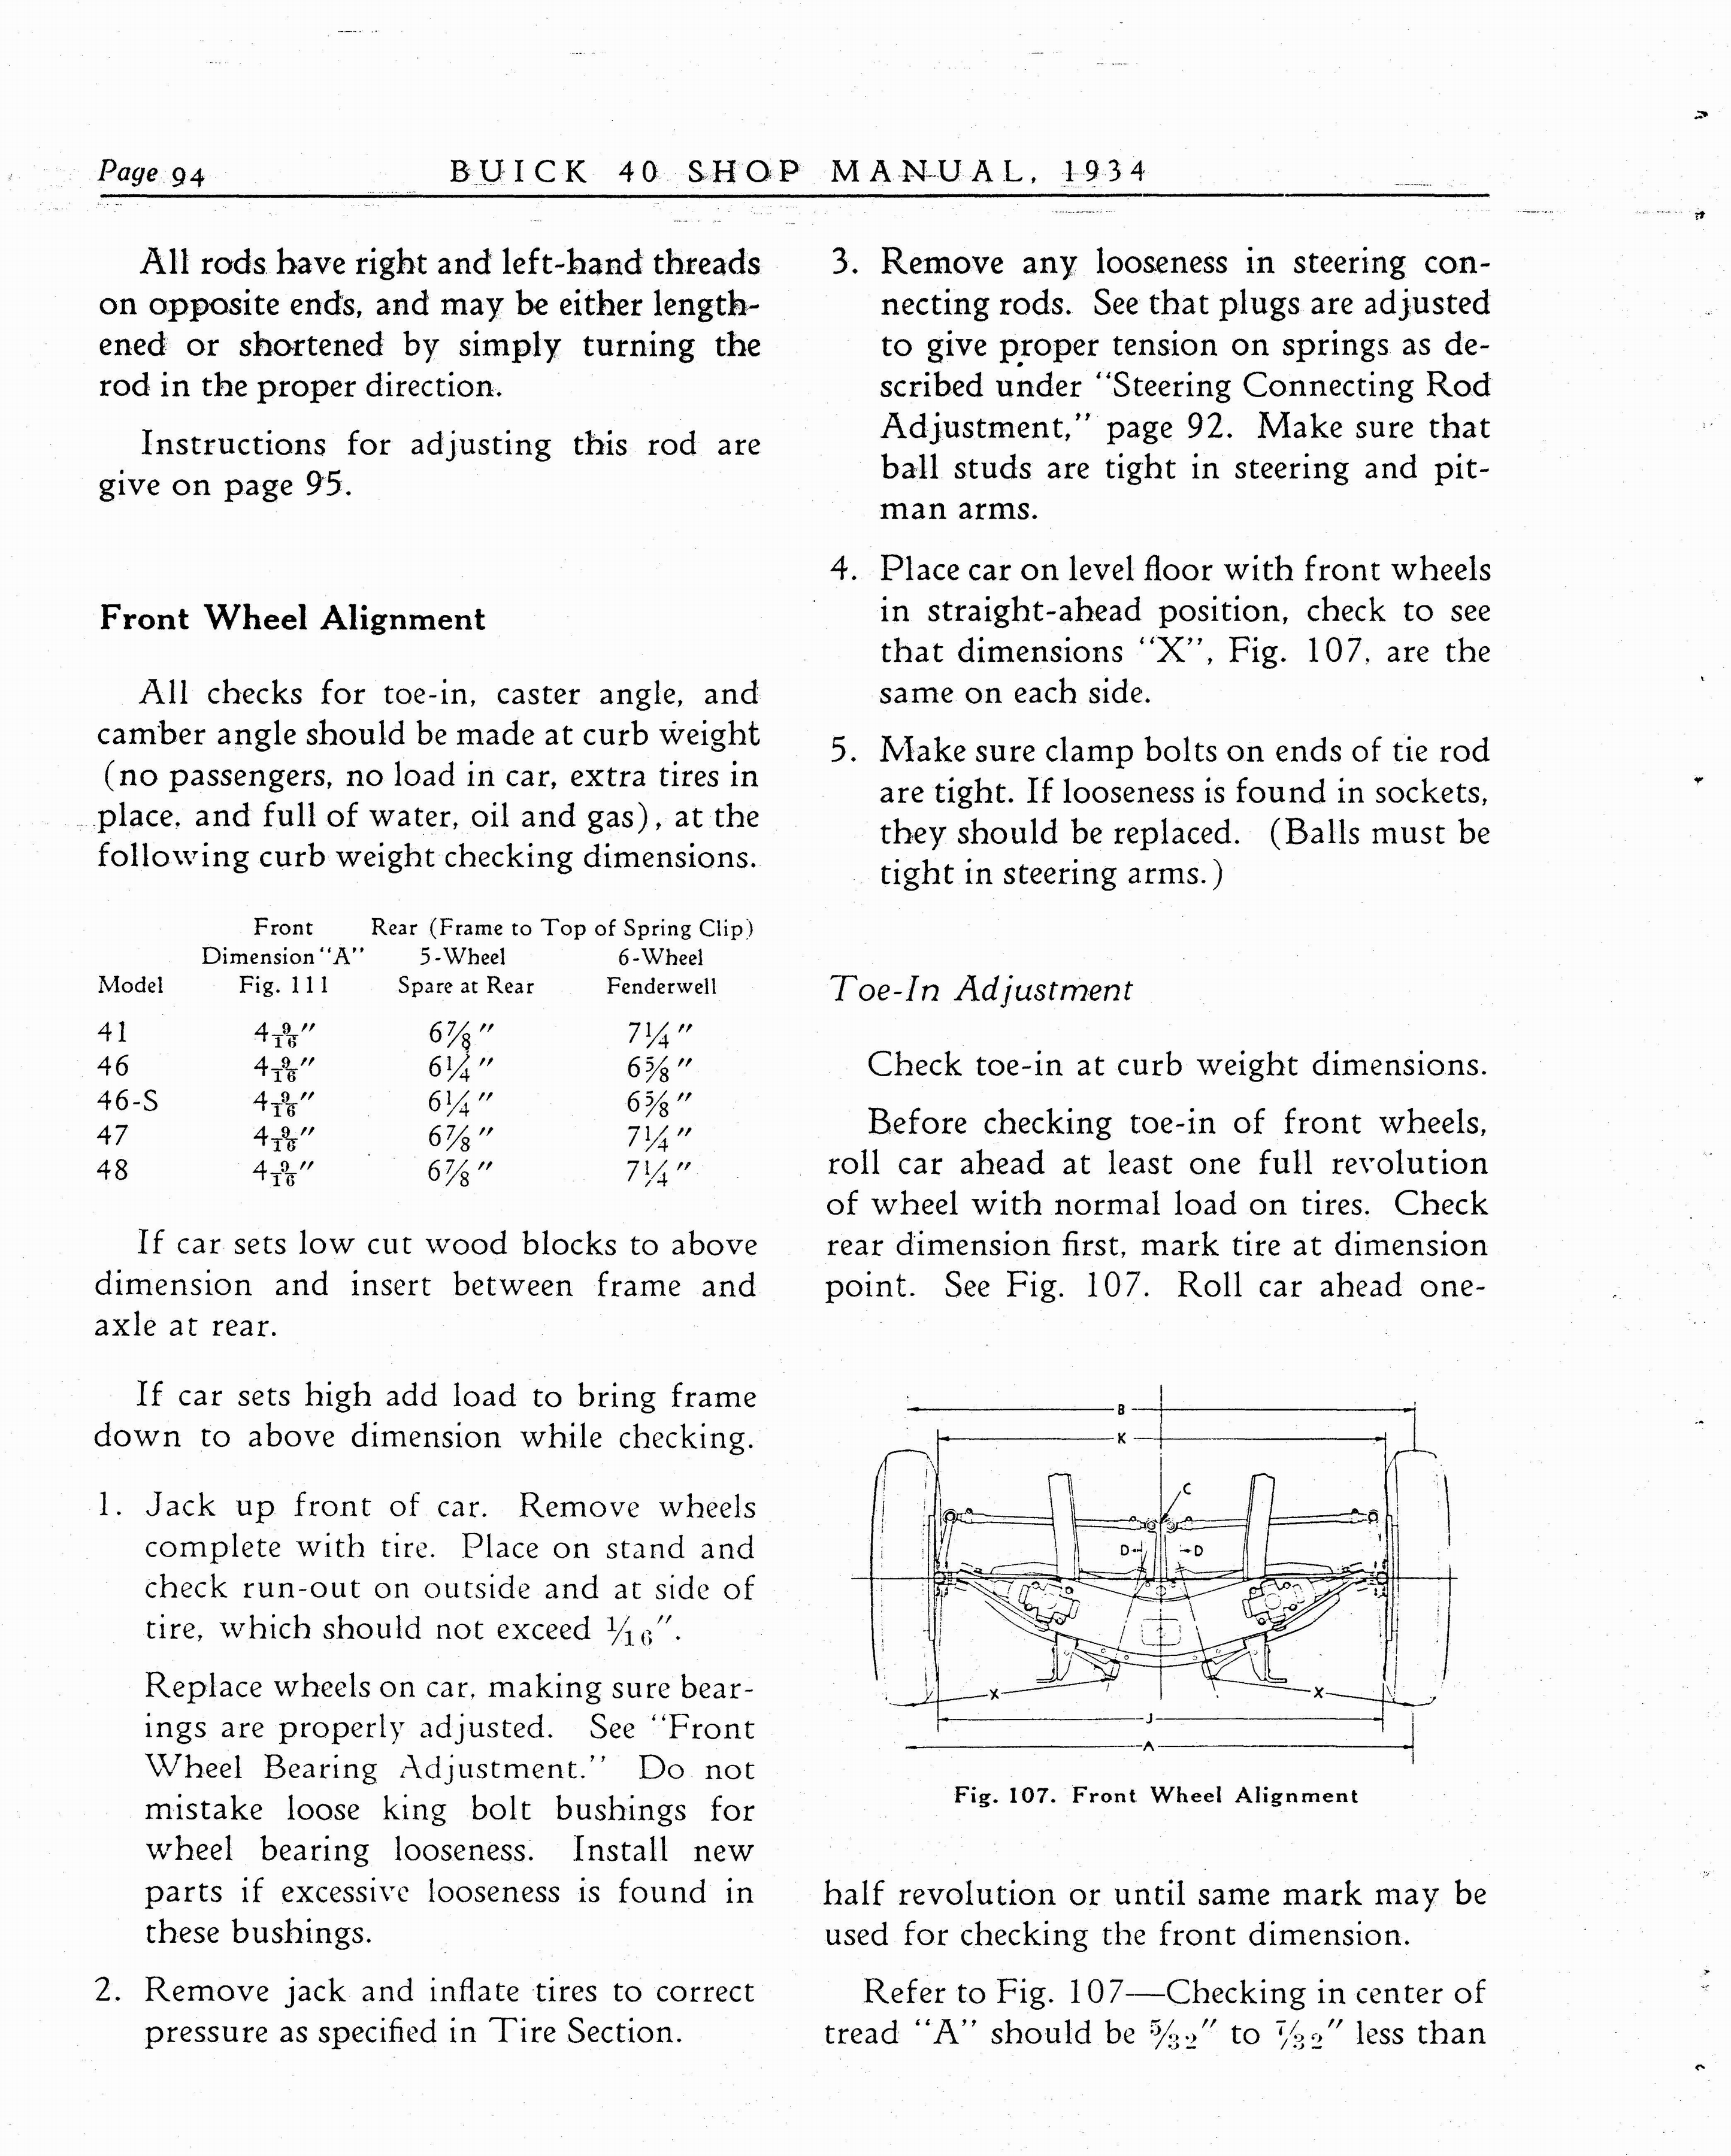 n_1934 Buick Series 40 Shop Manual_Page_095.jpg